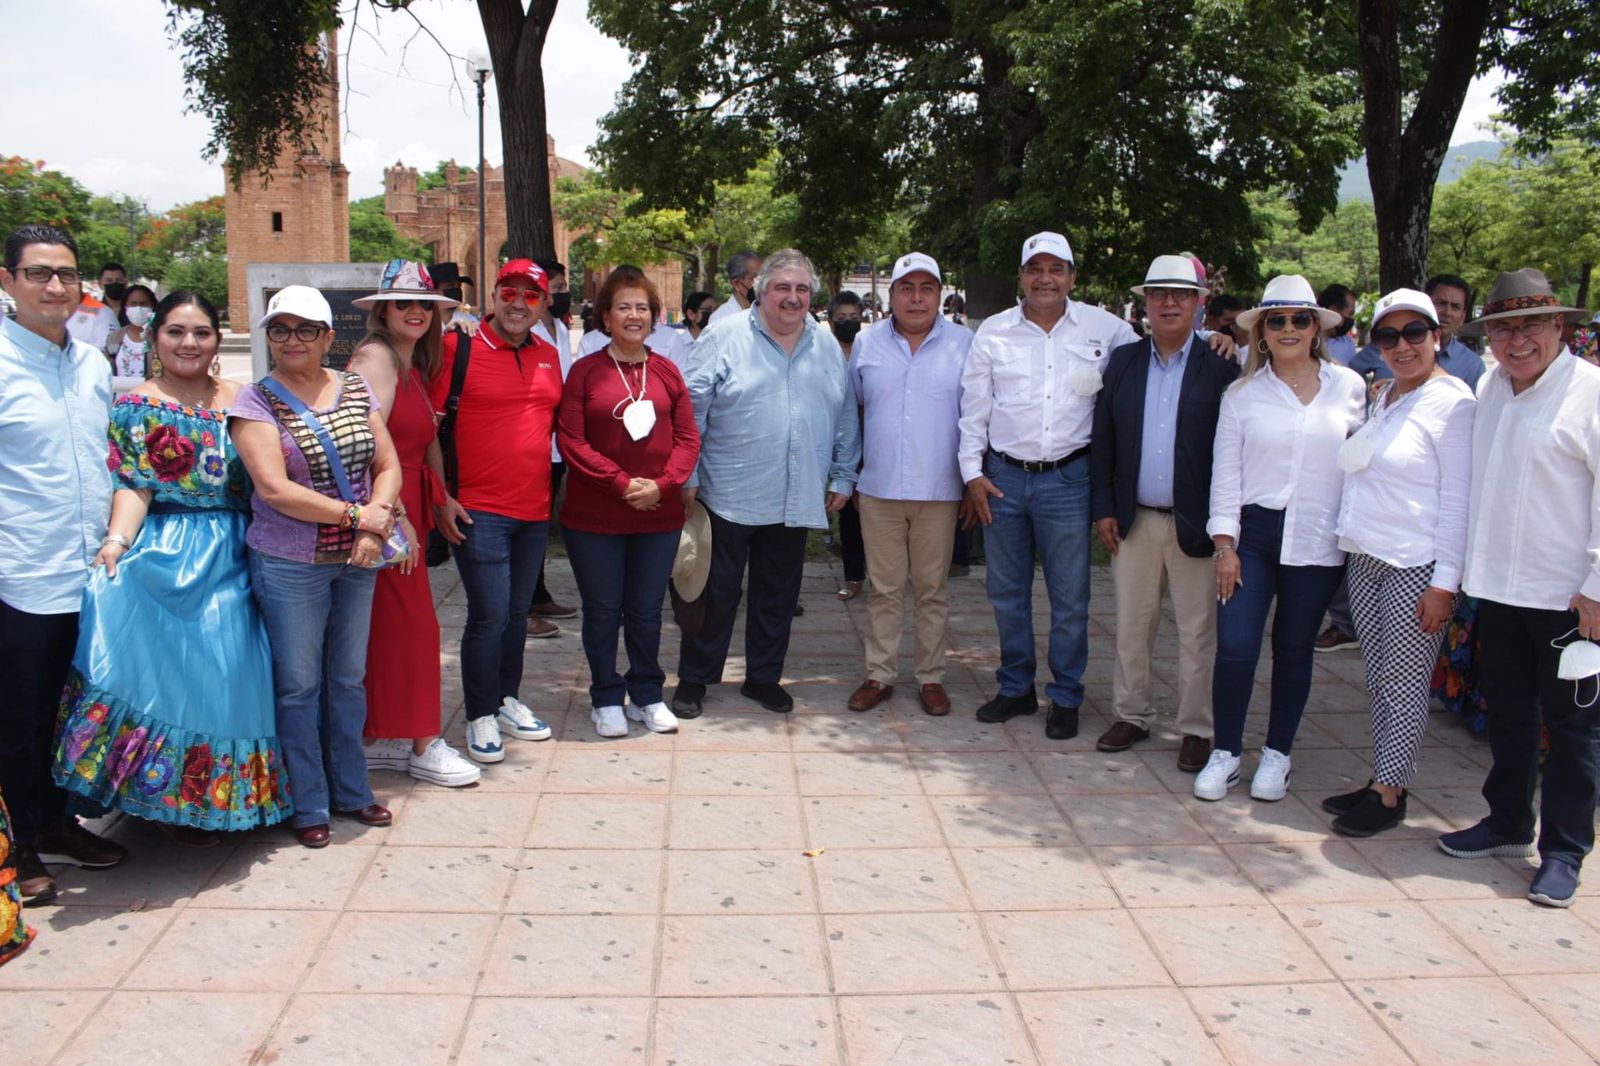 Reconocen integrantes de la Conatrib viabilidad turística de Chiapas